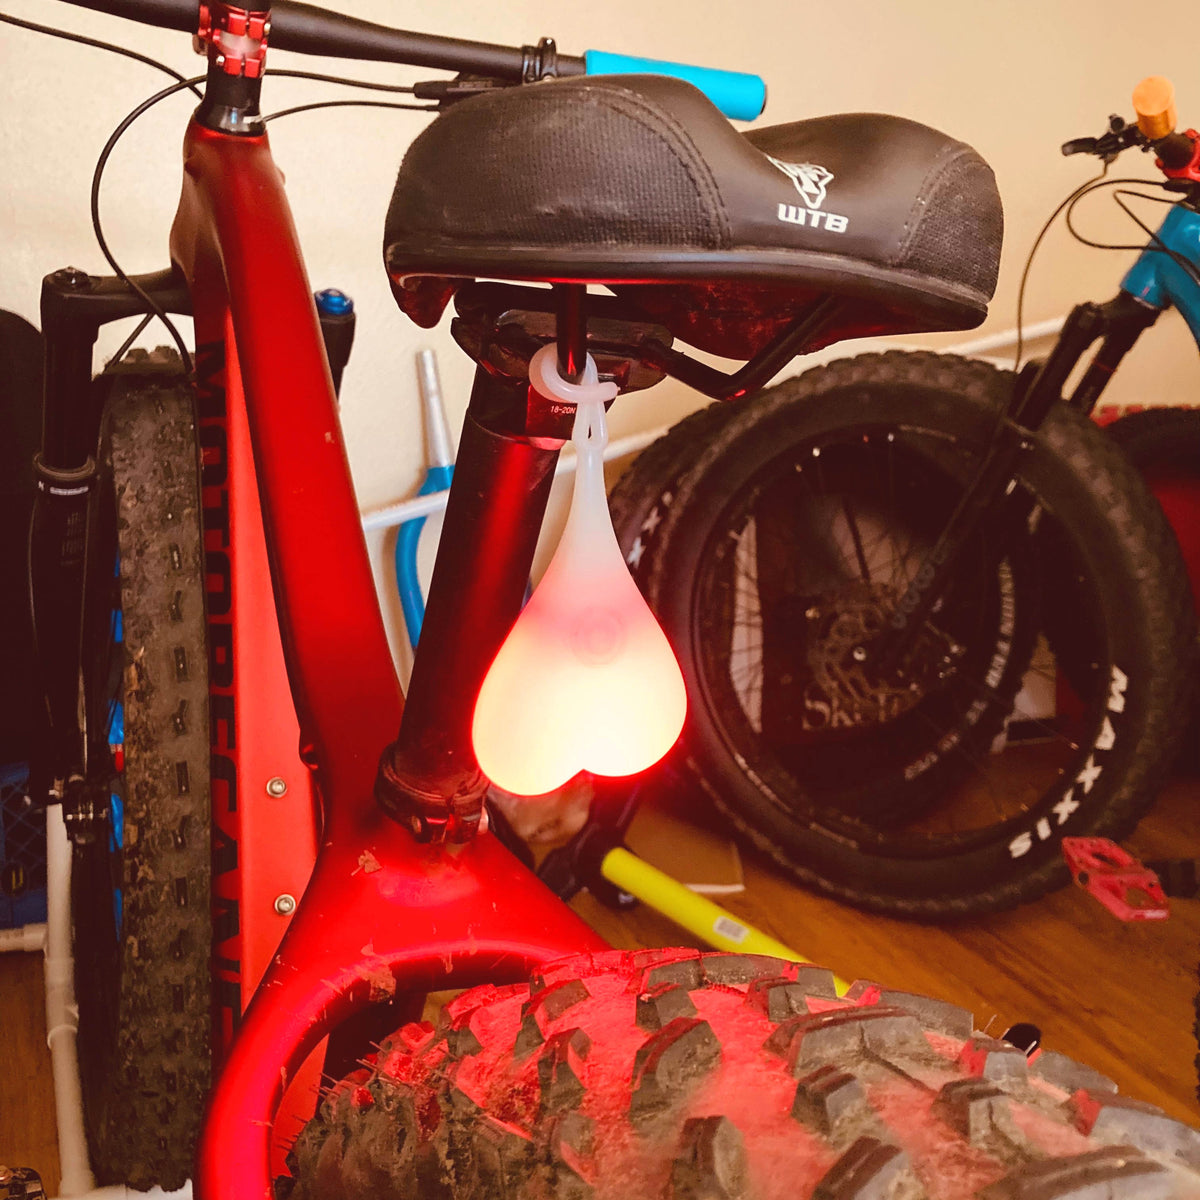 strubehoved hvordan Så hurtigt som en flash Bike Balls Cycling Red Tailgate Safety Light | Bike Nuts for Fat Bike,  Mountain Bike, Road Bike | Fat Bike Asinine | Apparel and accessories for  fat biking